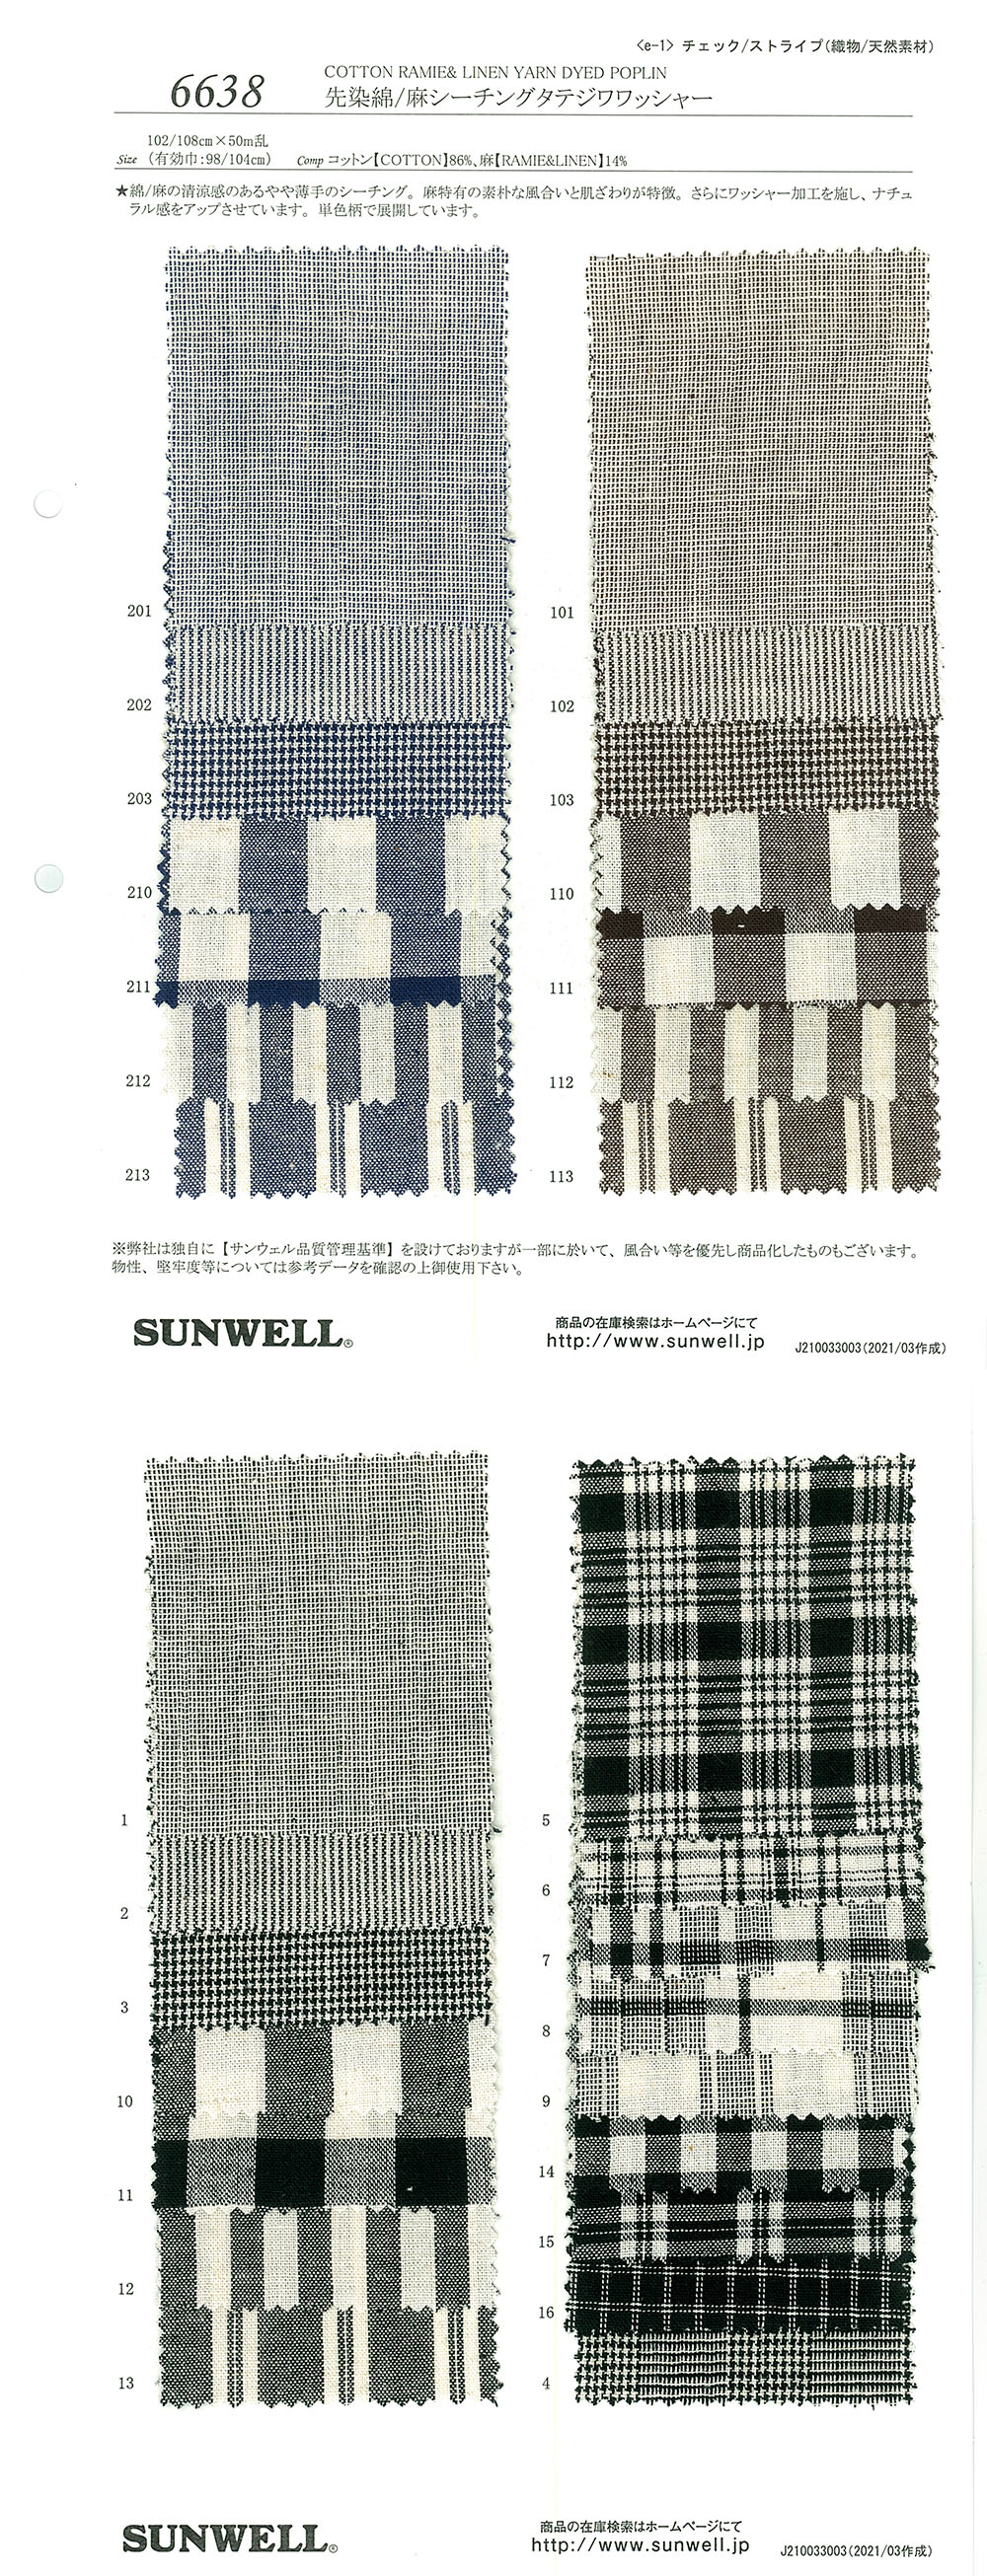 6638 Procesamiento De Lavadora Vertical Loomstate De Algodón/lino Teñido En Hilo[Fabrica Textil] SUNWELL